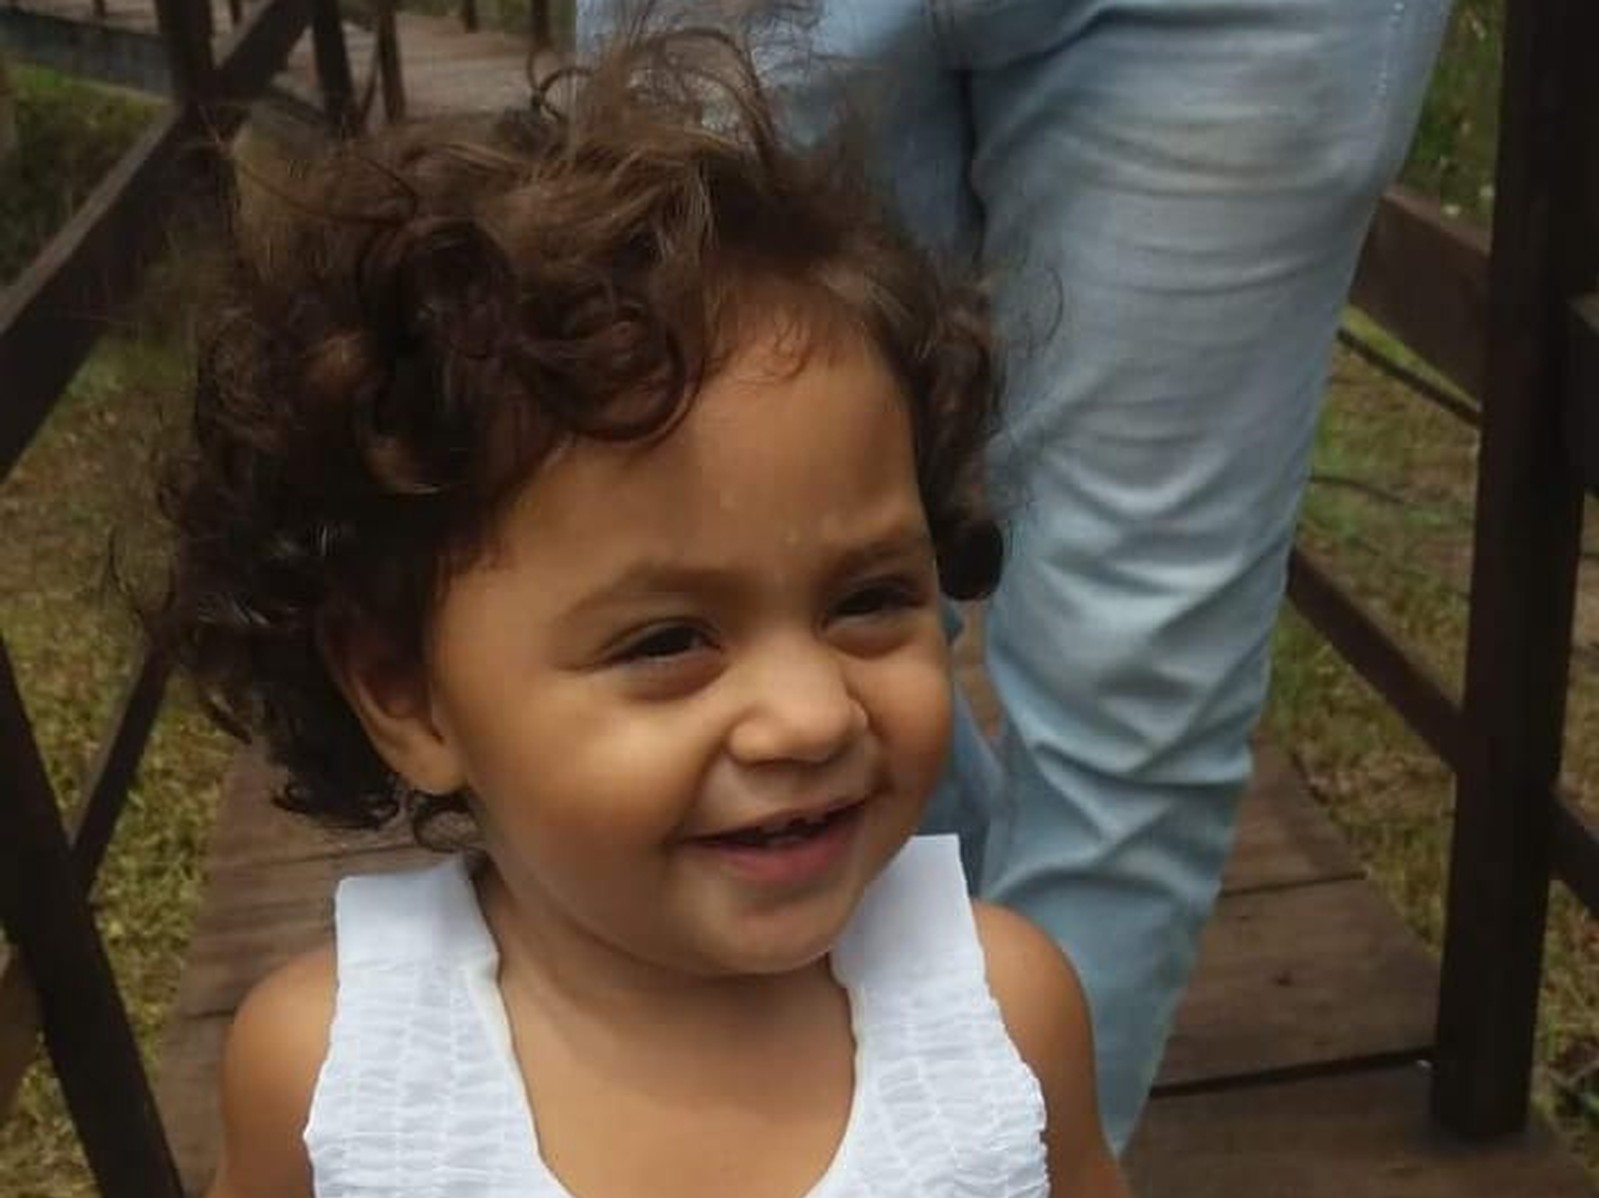 Hospital confirma morte cerebral de menina de dois anos baleada em Parnamirim Paula Isamara Mendes